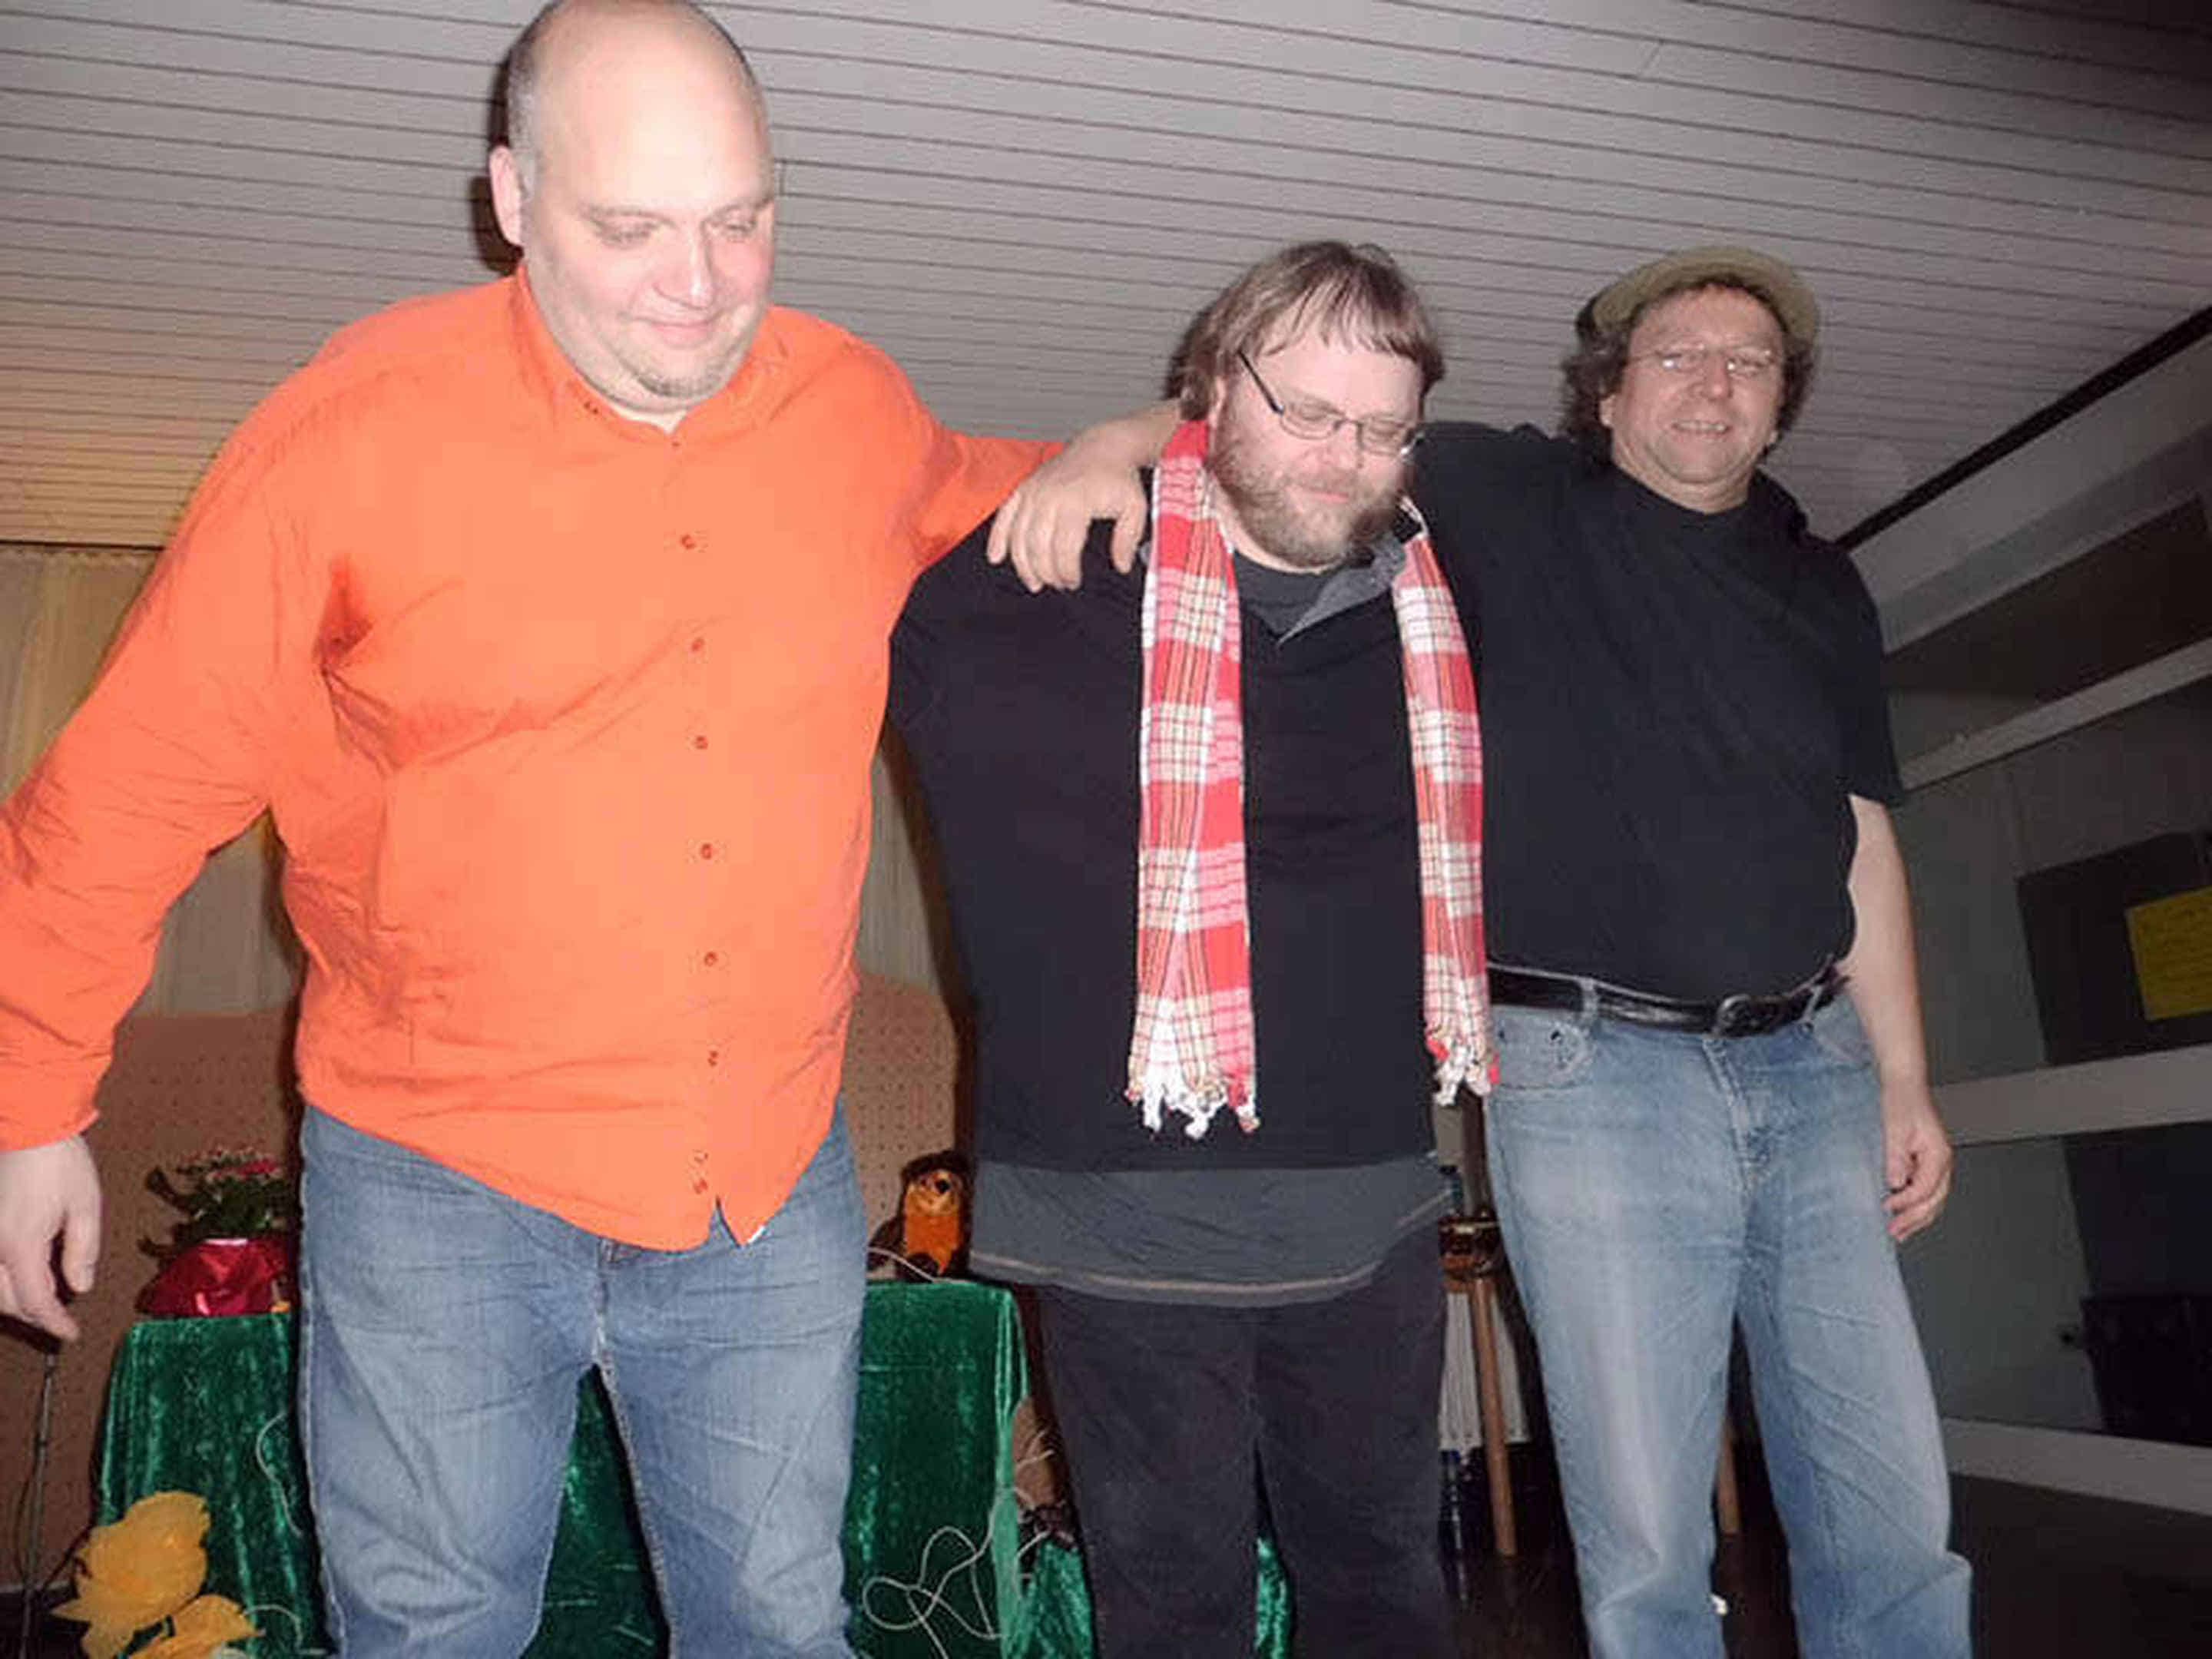 Foto: Stefan links, ich in der Mitte und Ulf rechts verbeugen uns abschließend vor dem Publikum.